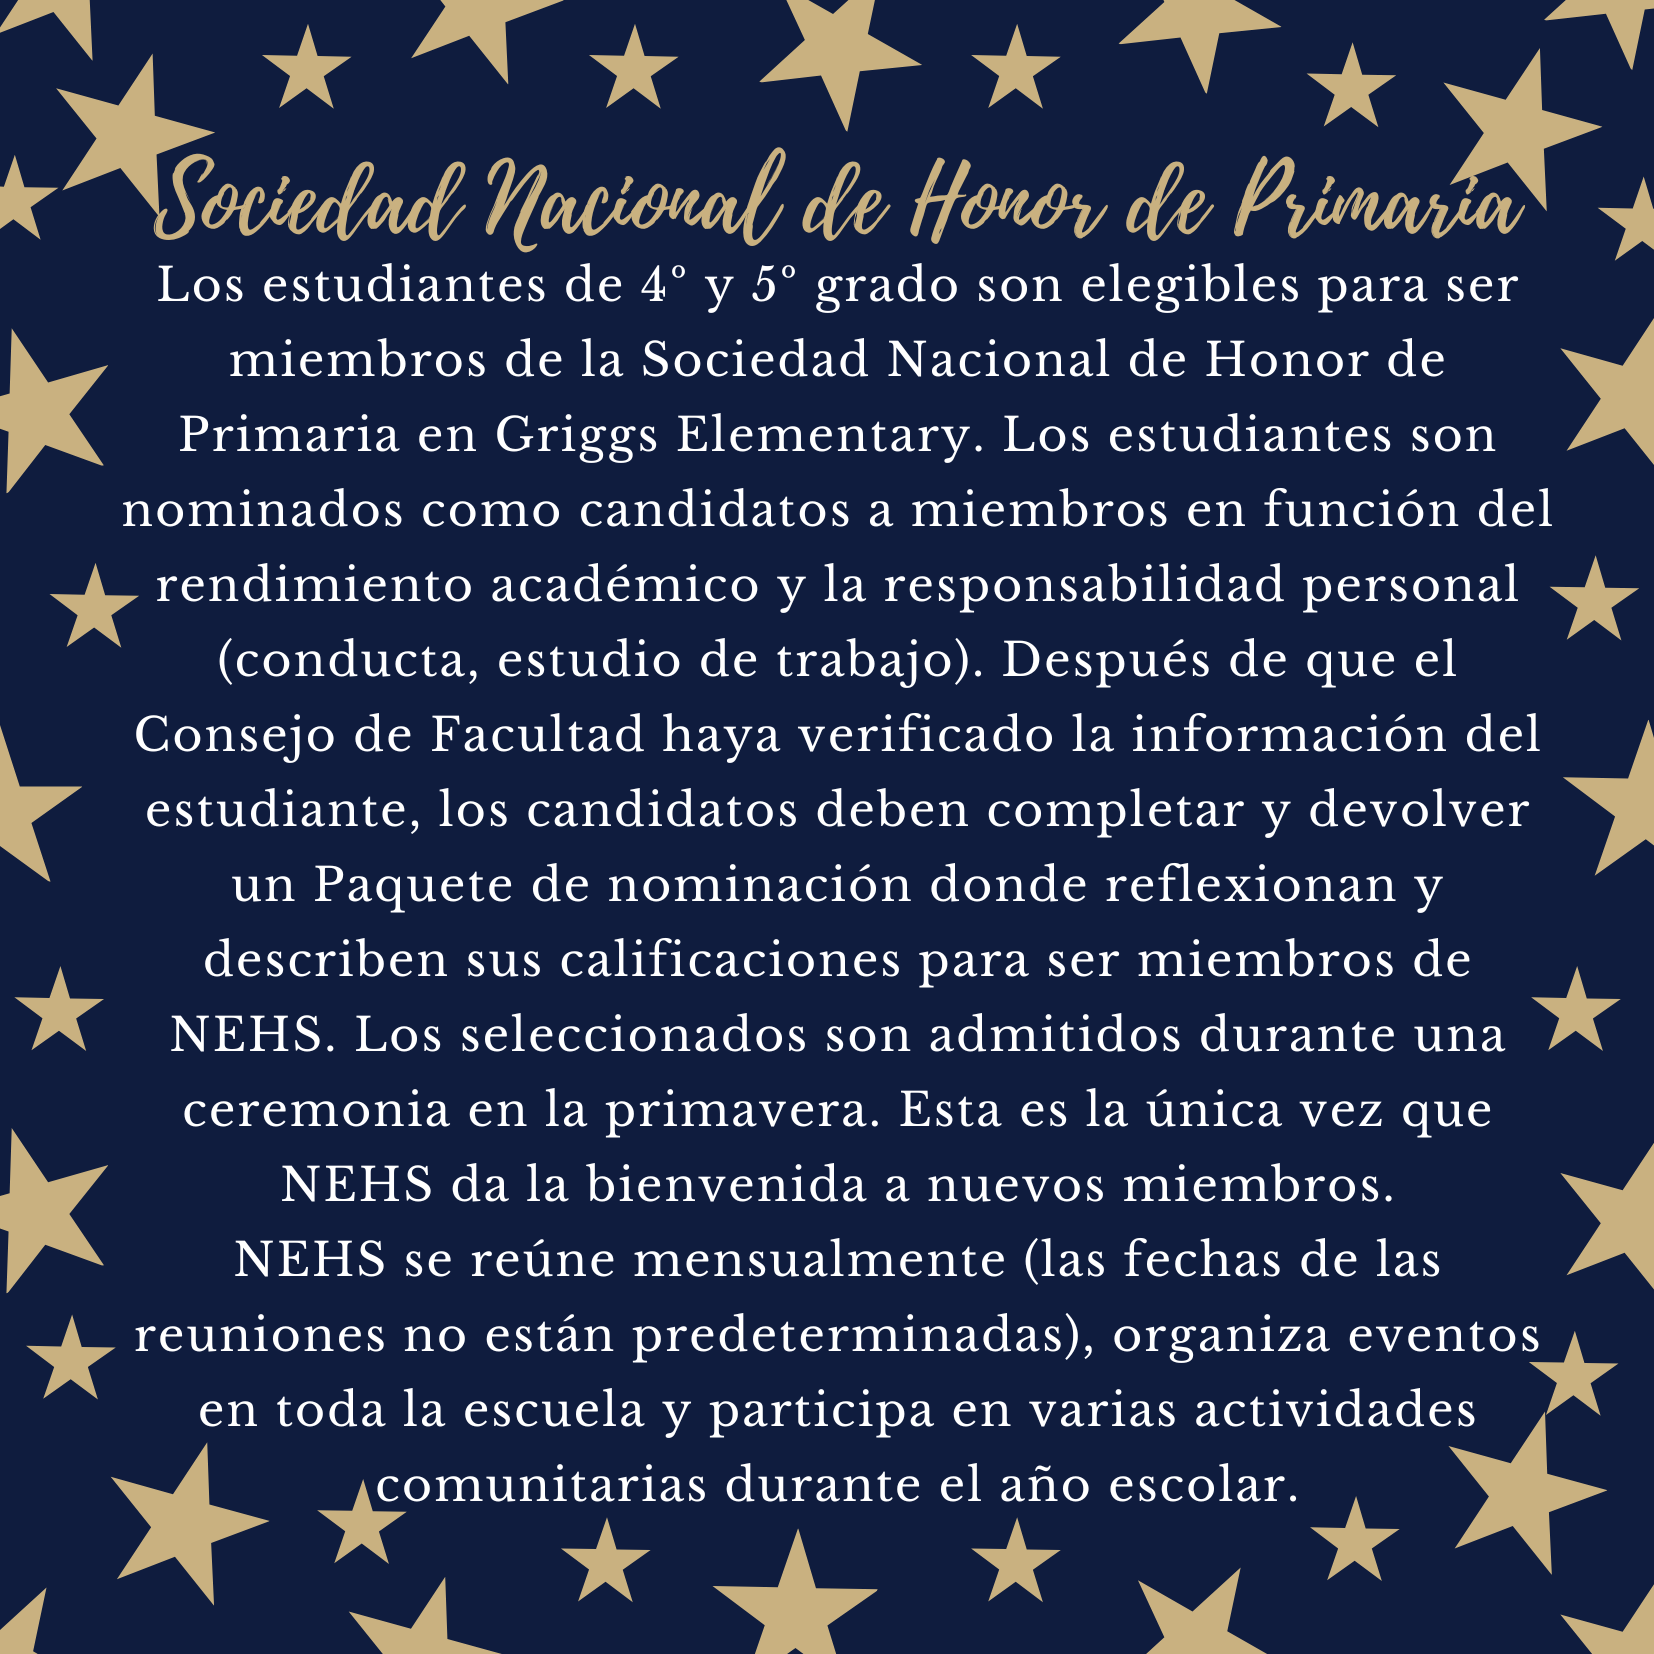 NEHS flyer in Spanish